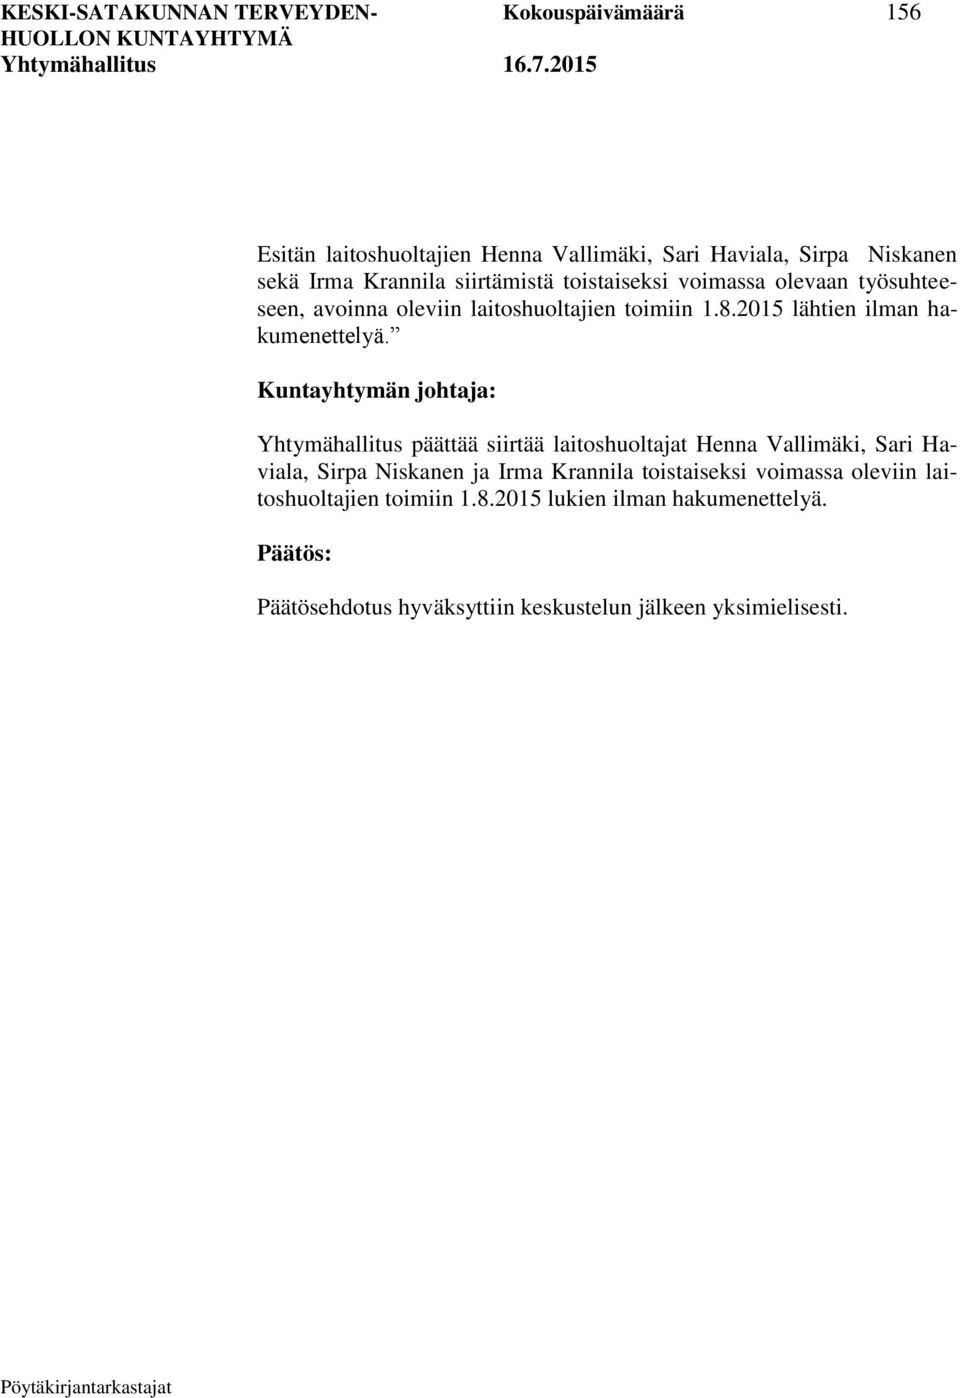 Kuntayhtymän johtaja: Yhtymähallitus päättää siirtää laitoshuoltajat Henna Vallimäki, Sari Haviala, Sirpa Niskanen ja Irma Krannila